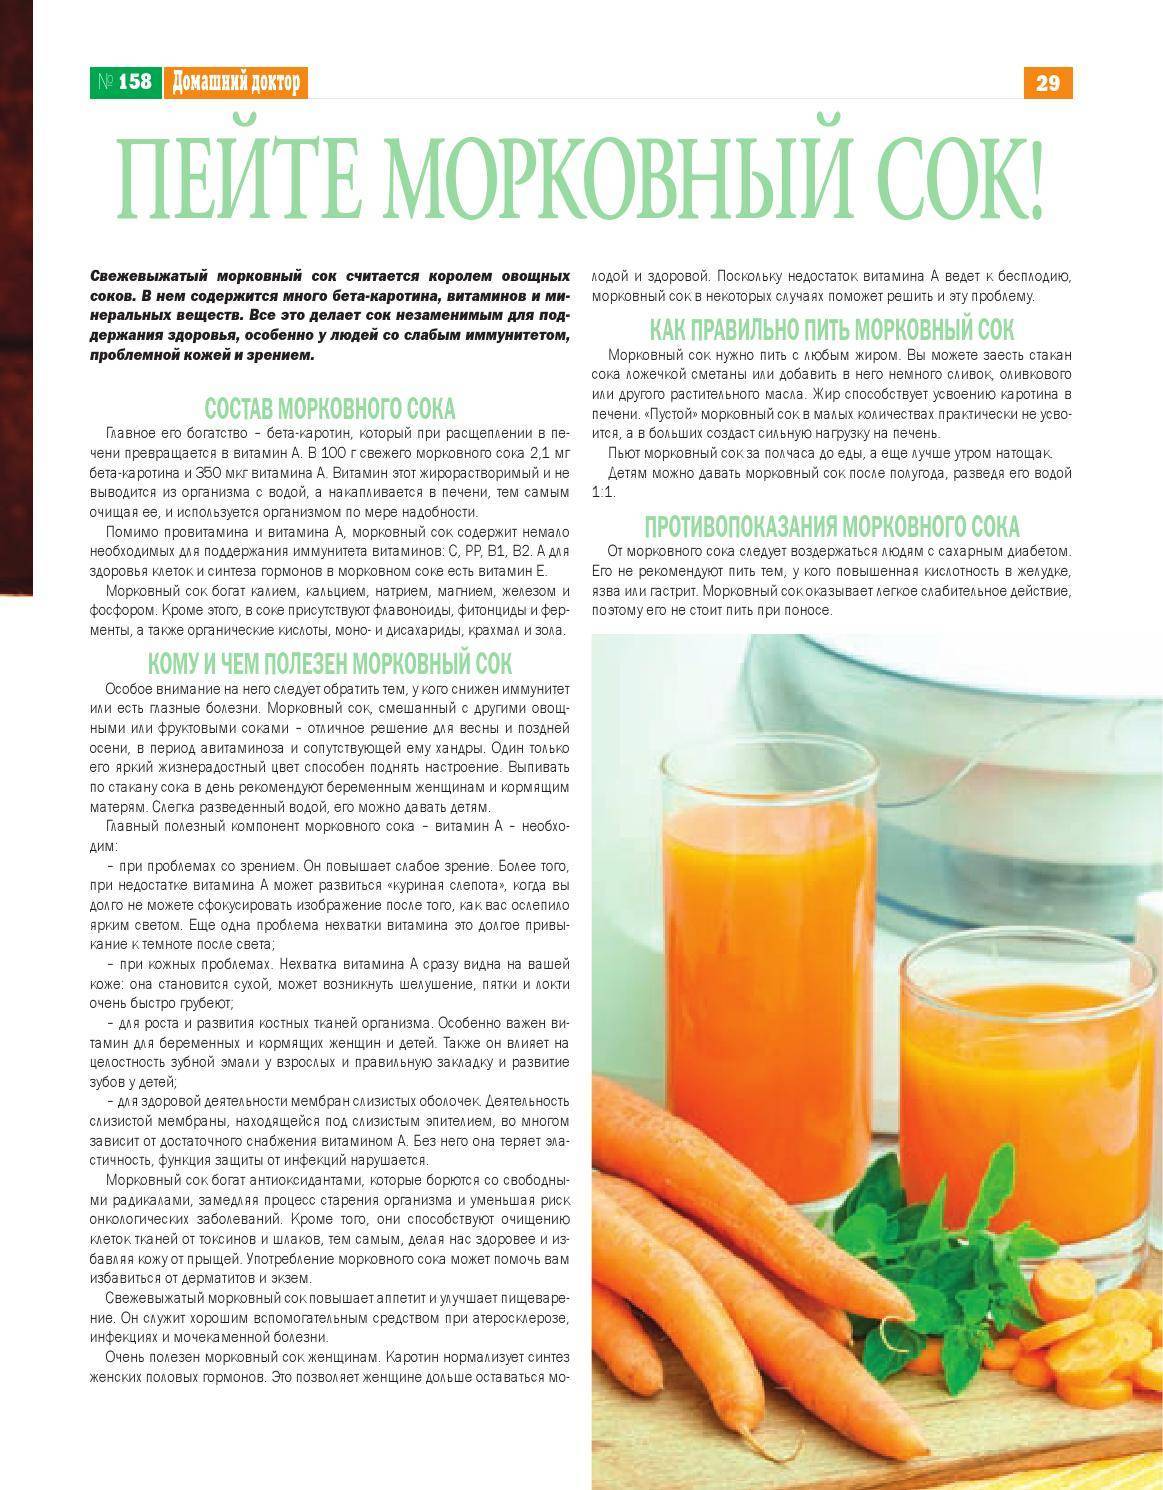 Сколько хранить свежевыжатый сок. Чем полезен морковный сок. Что содержится в морковном соке. Когда пить морковный сок. Польза морковного сока для организма.